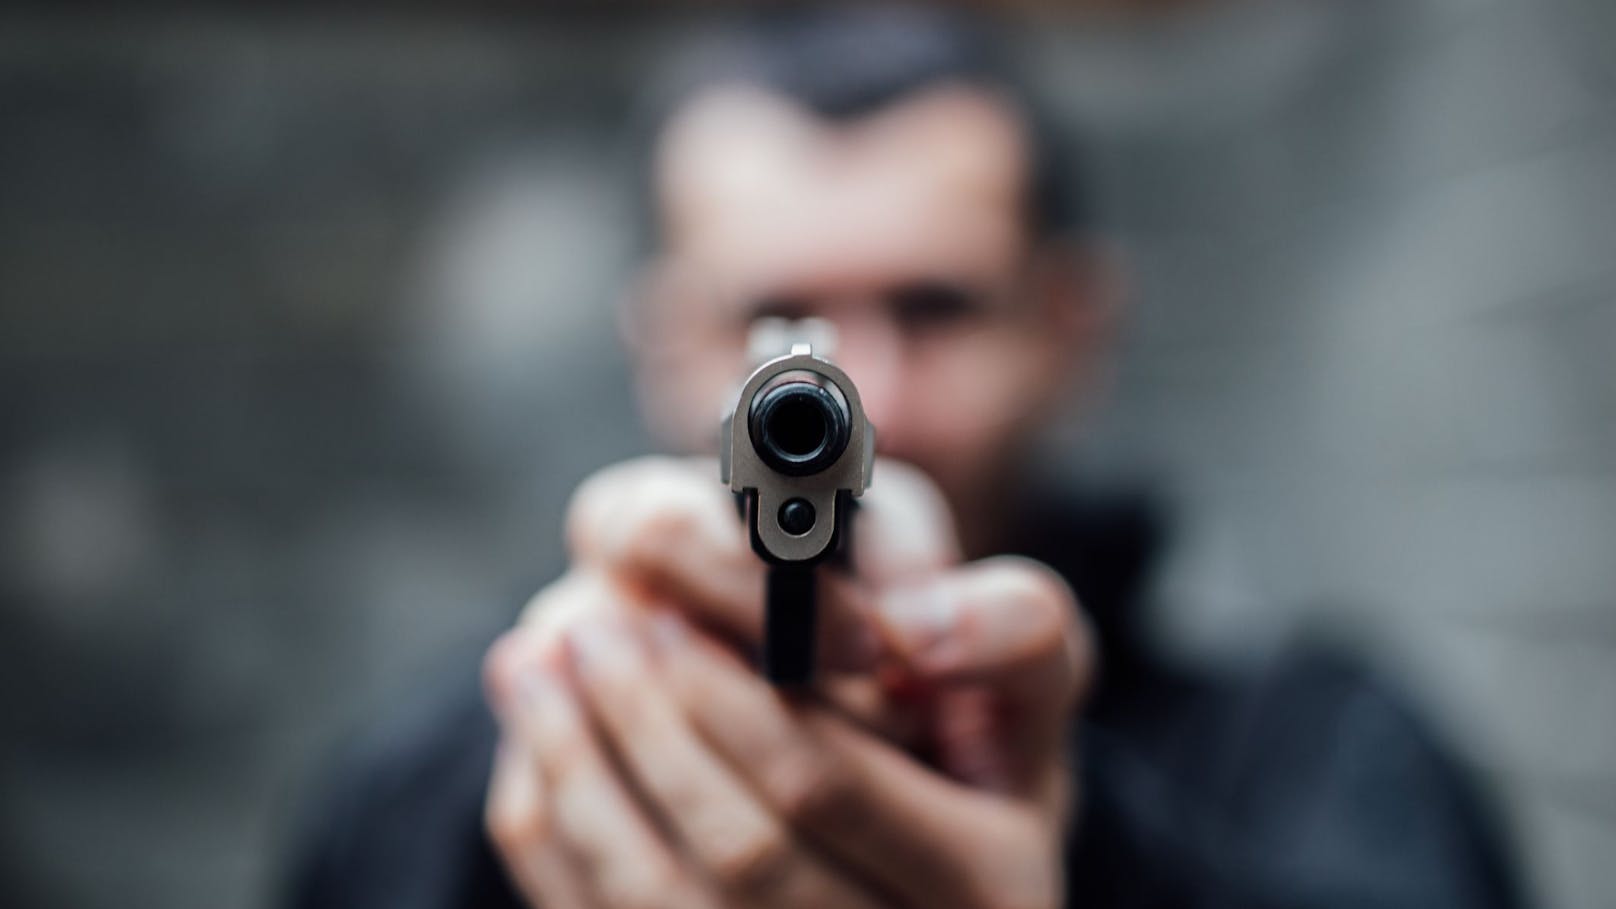 Mann will 23-Jährigen überfallen – Opfer zückt Waffe